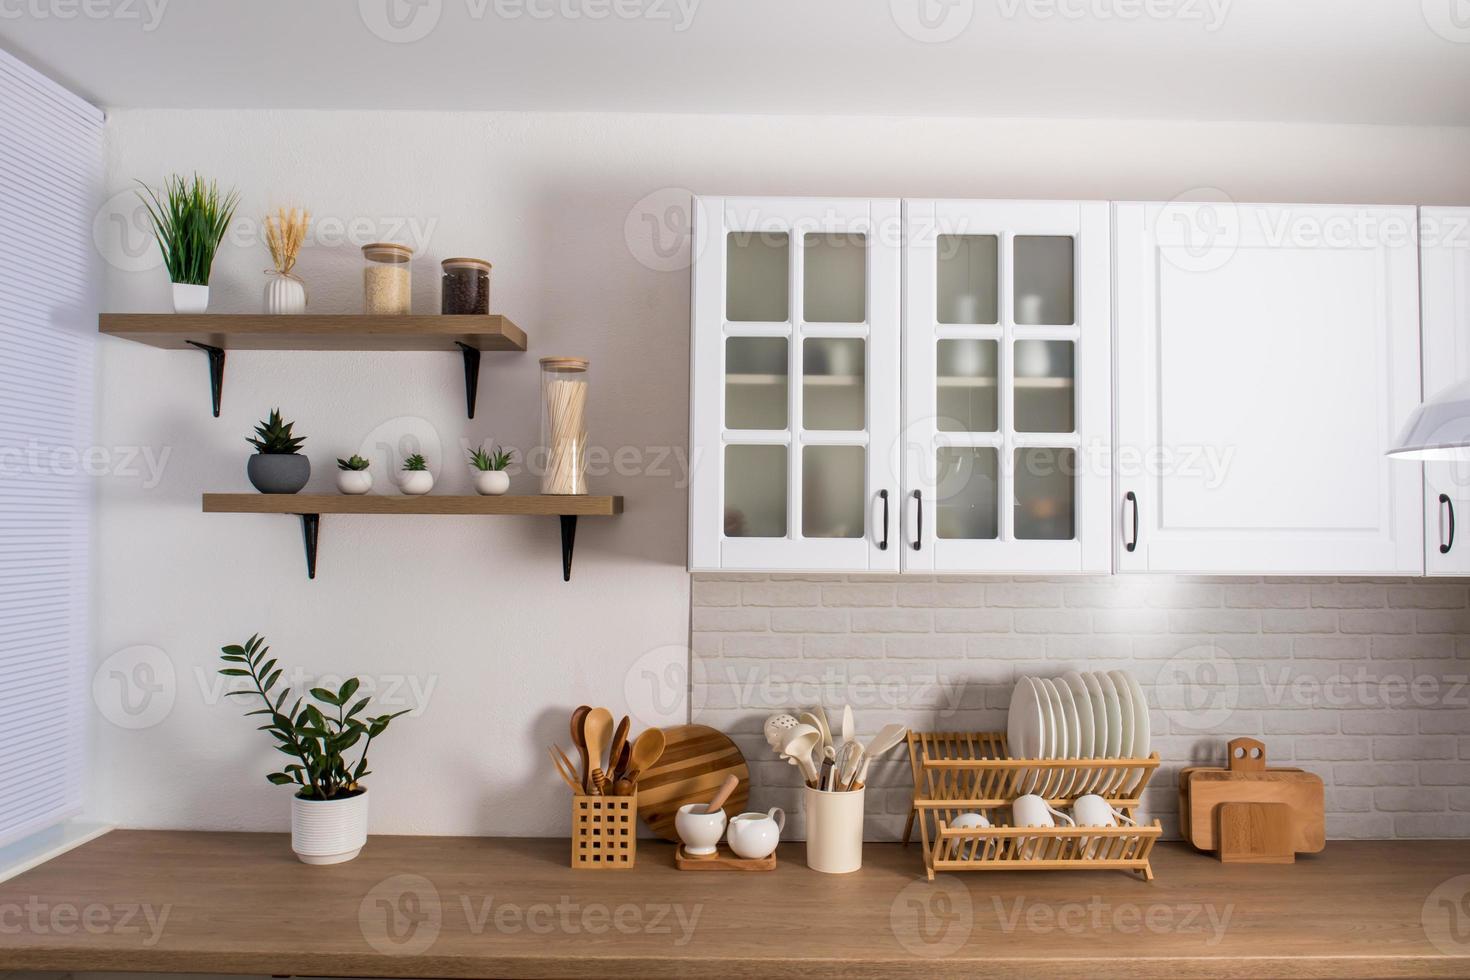 hermoso interior moderno de la cocina blanca. parte de la pared con estantes  con flores y utensilios de cocina. el concepto de minimalismo. 12877138  Foto de stock en Vecteezy